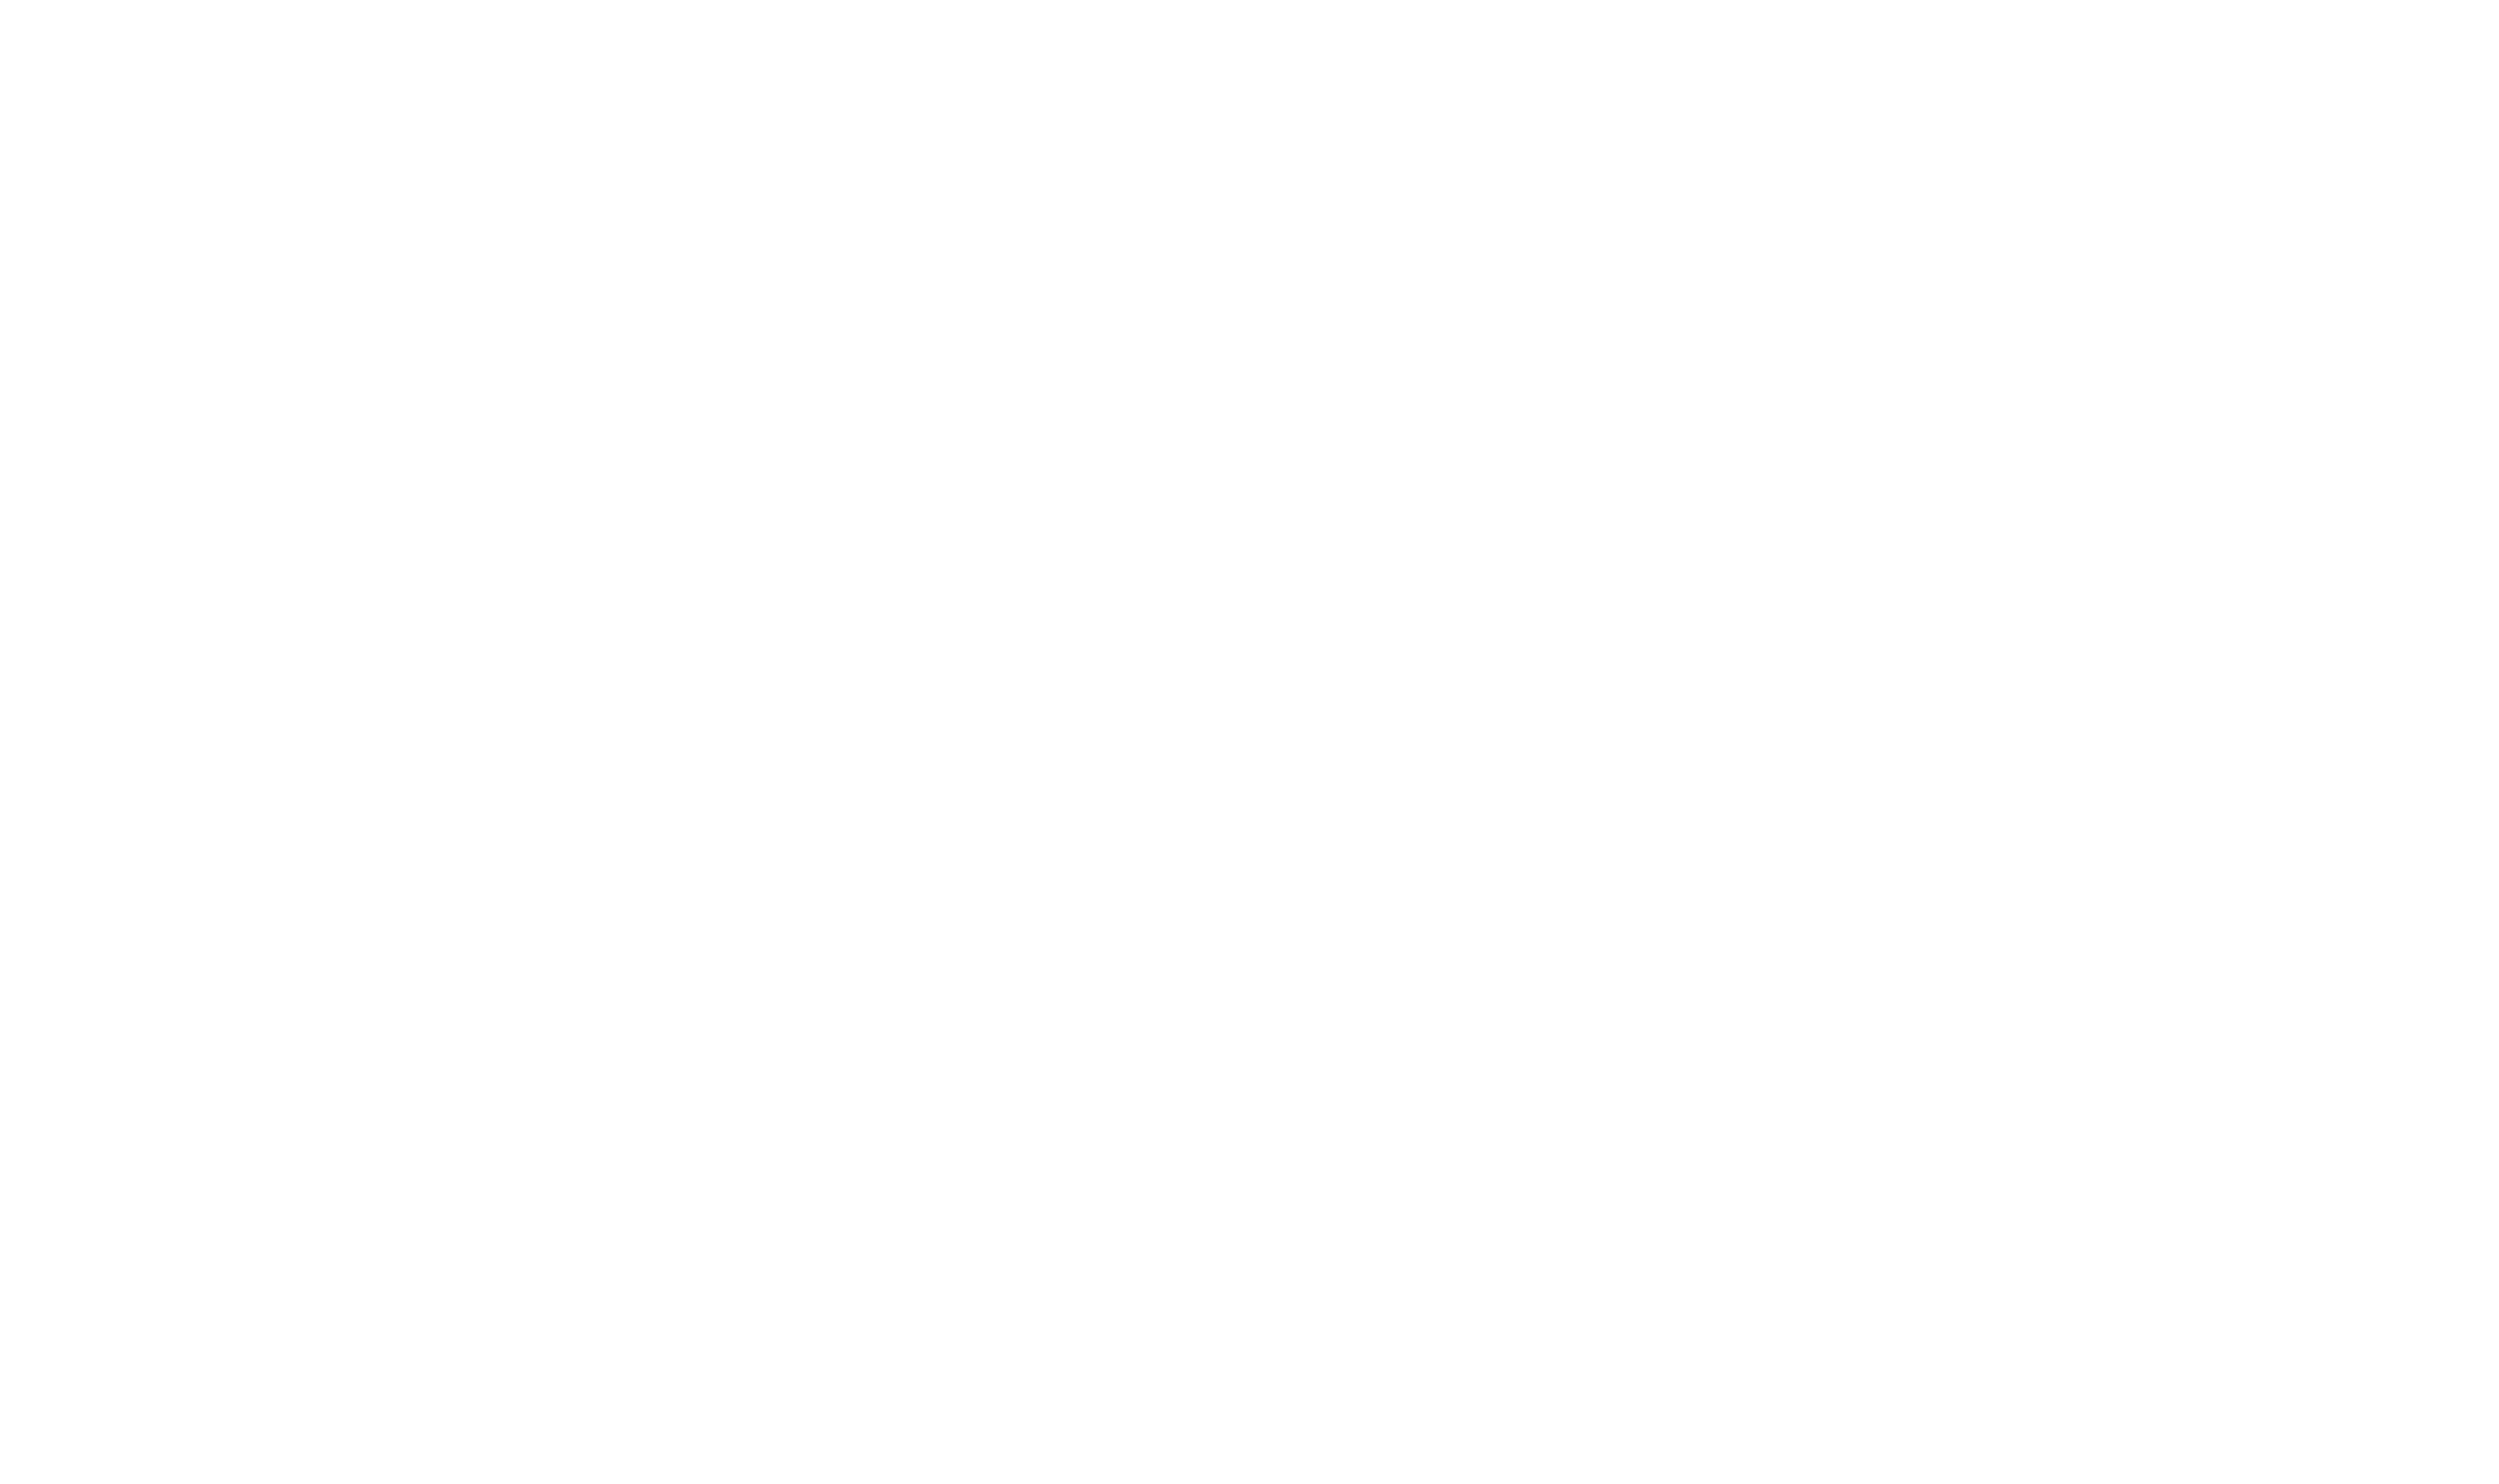 AITEKX